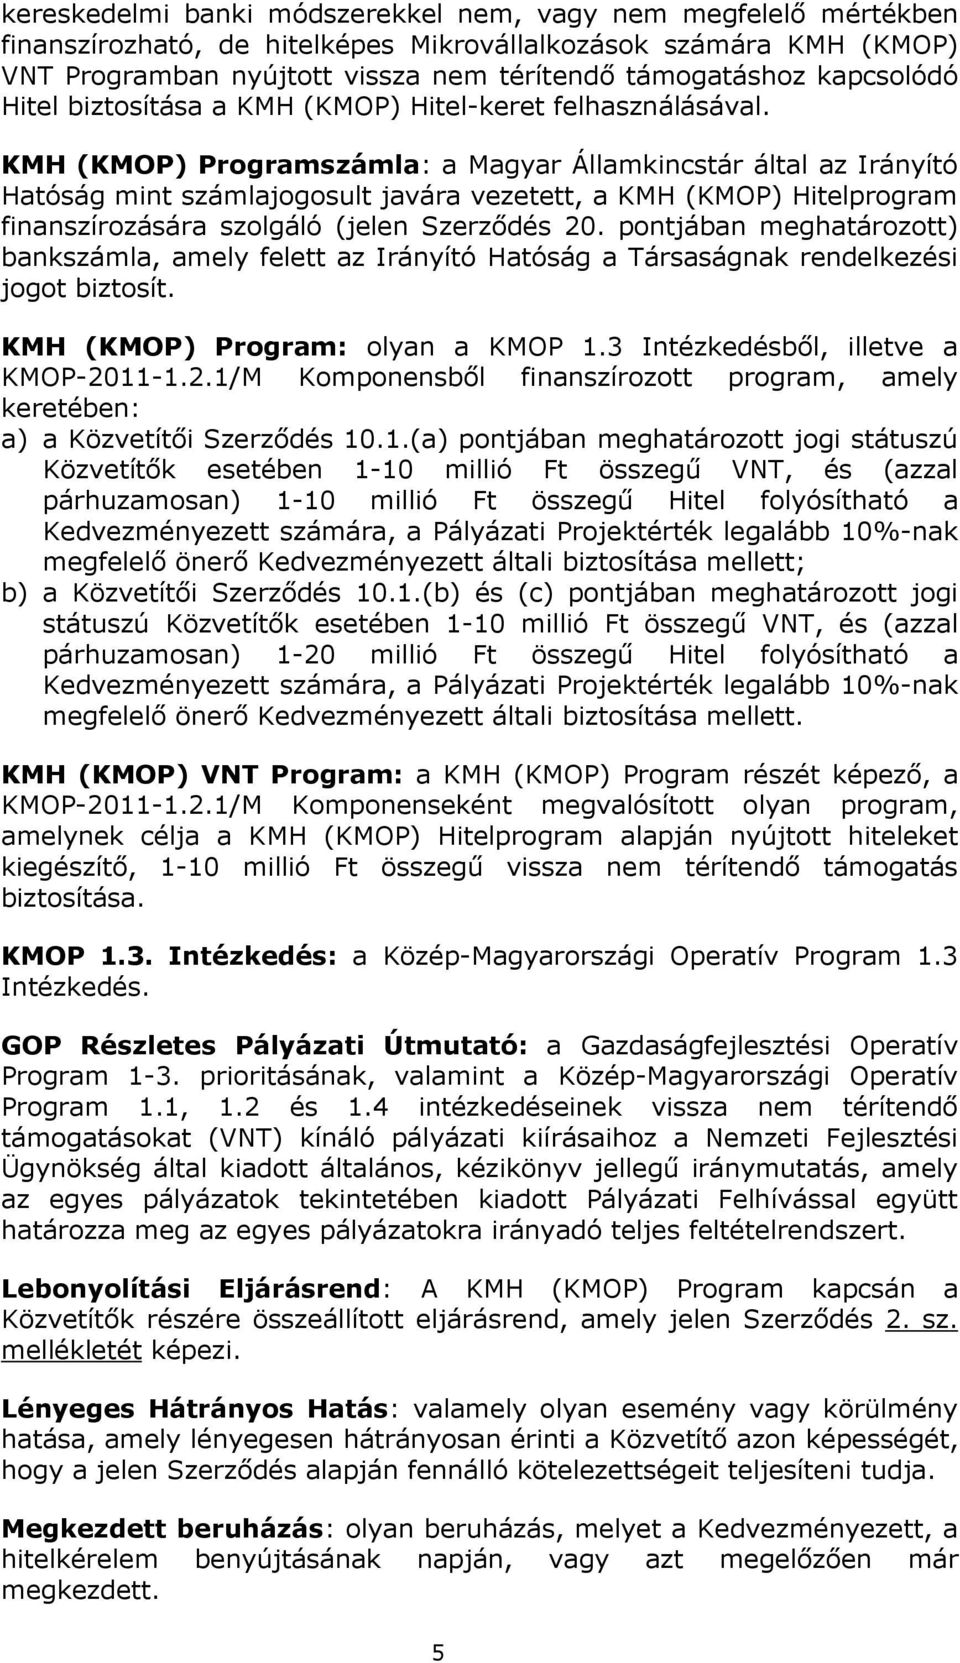 KMH (KMOP) Programszámla: a Magyar Államkincstár által az Irányító Hatóság mint számlajogosult javára vezetett, a KMH (KMOP) Hitelprogram finanszírozására szolgáló (jelen Szerződés 20.